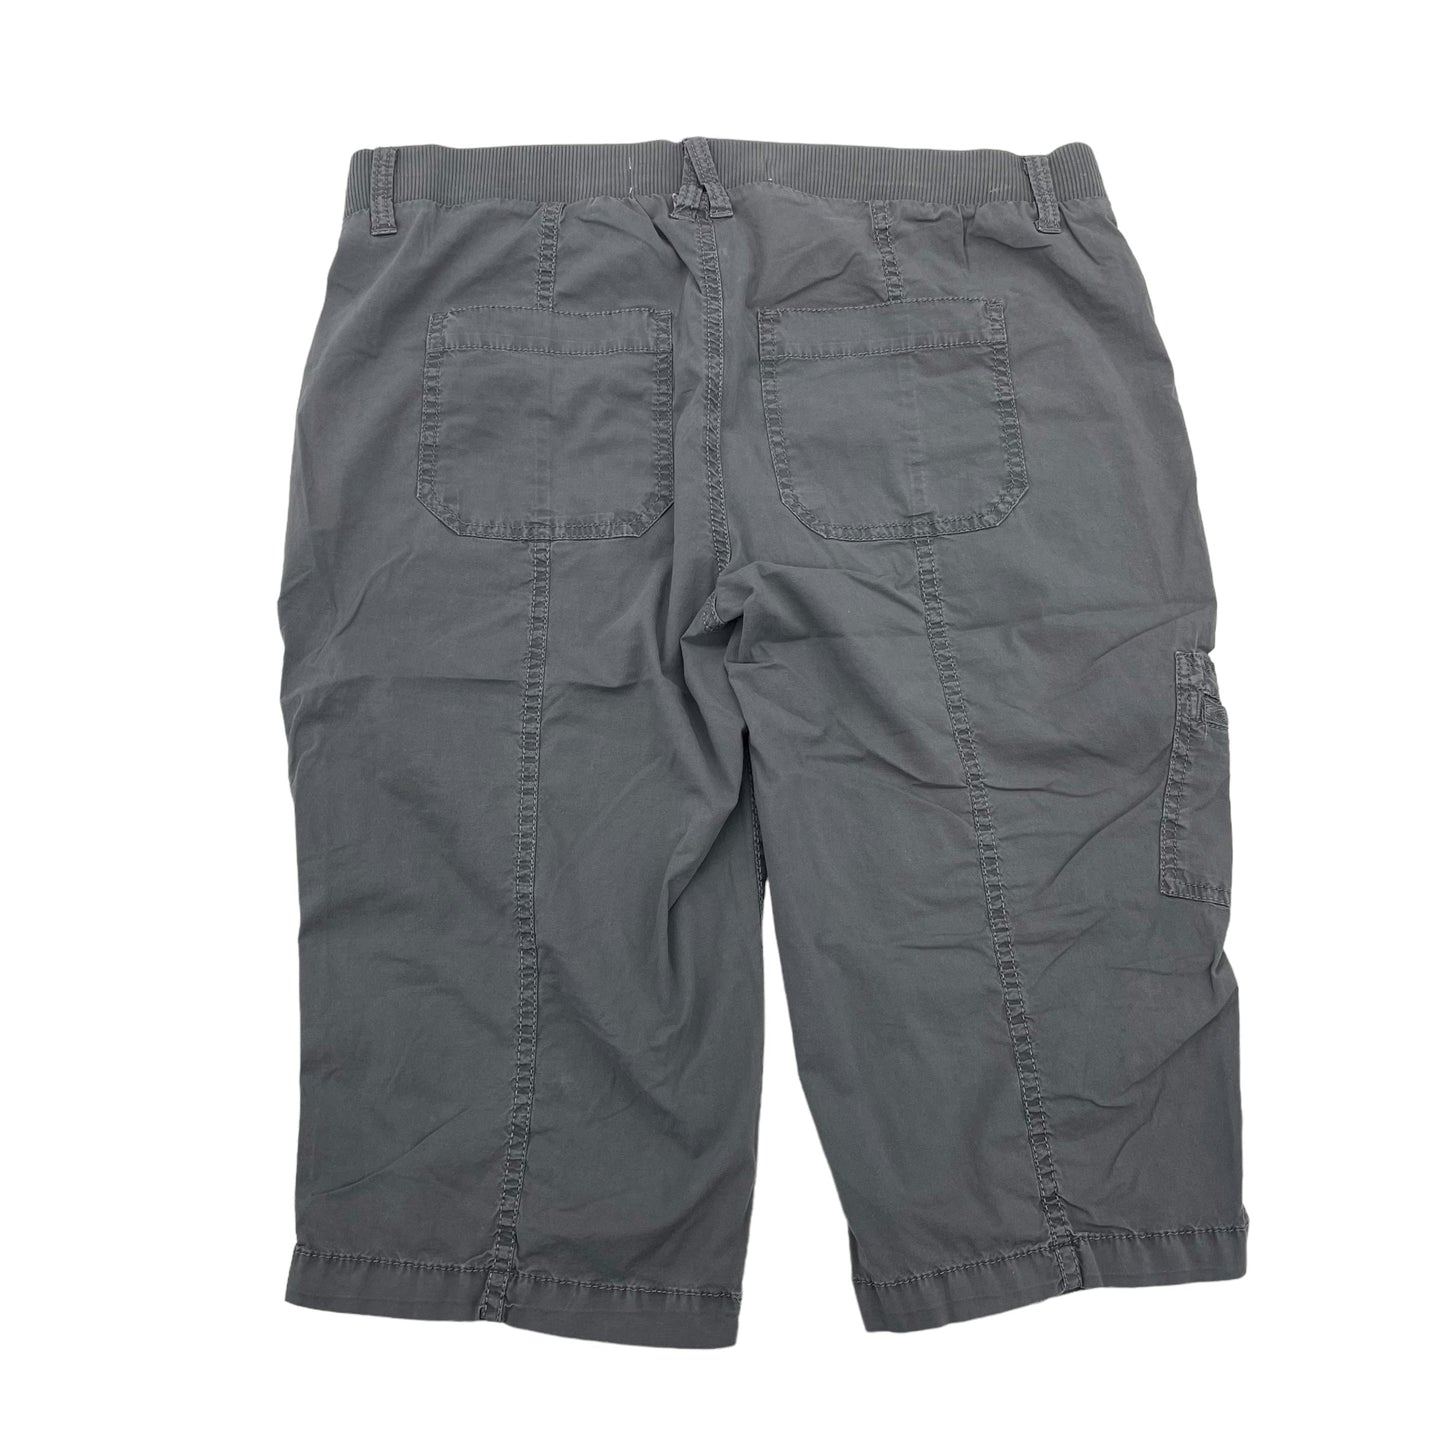 Grey Shorts Sonoma, Size 8